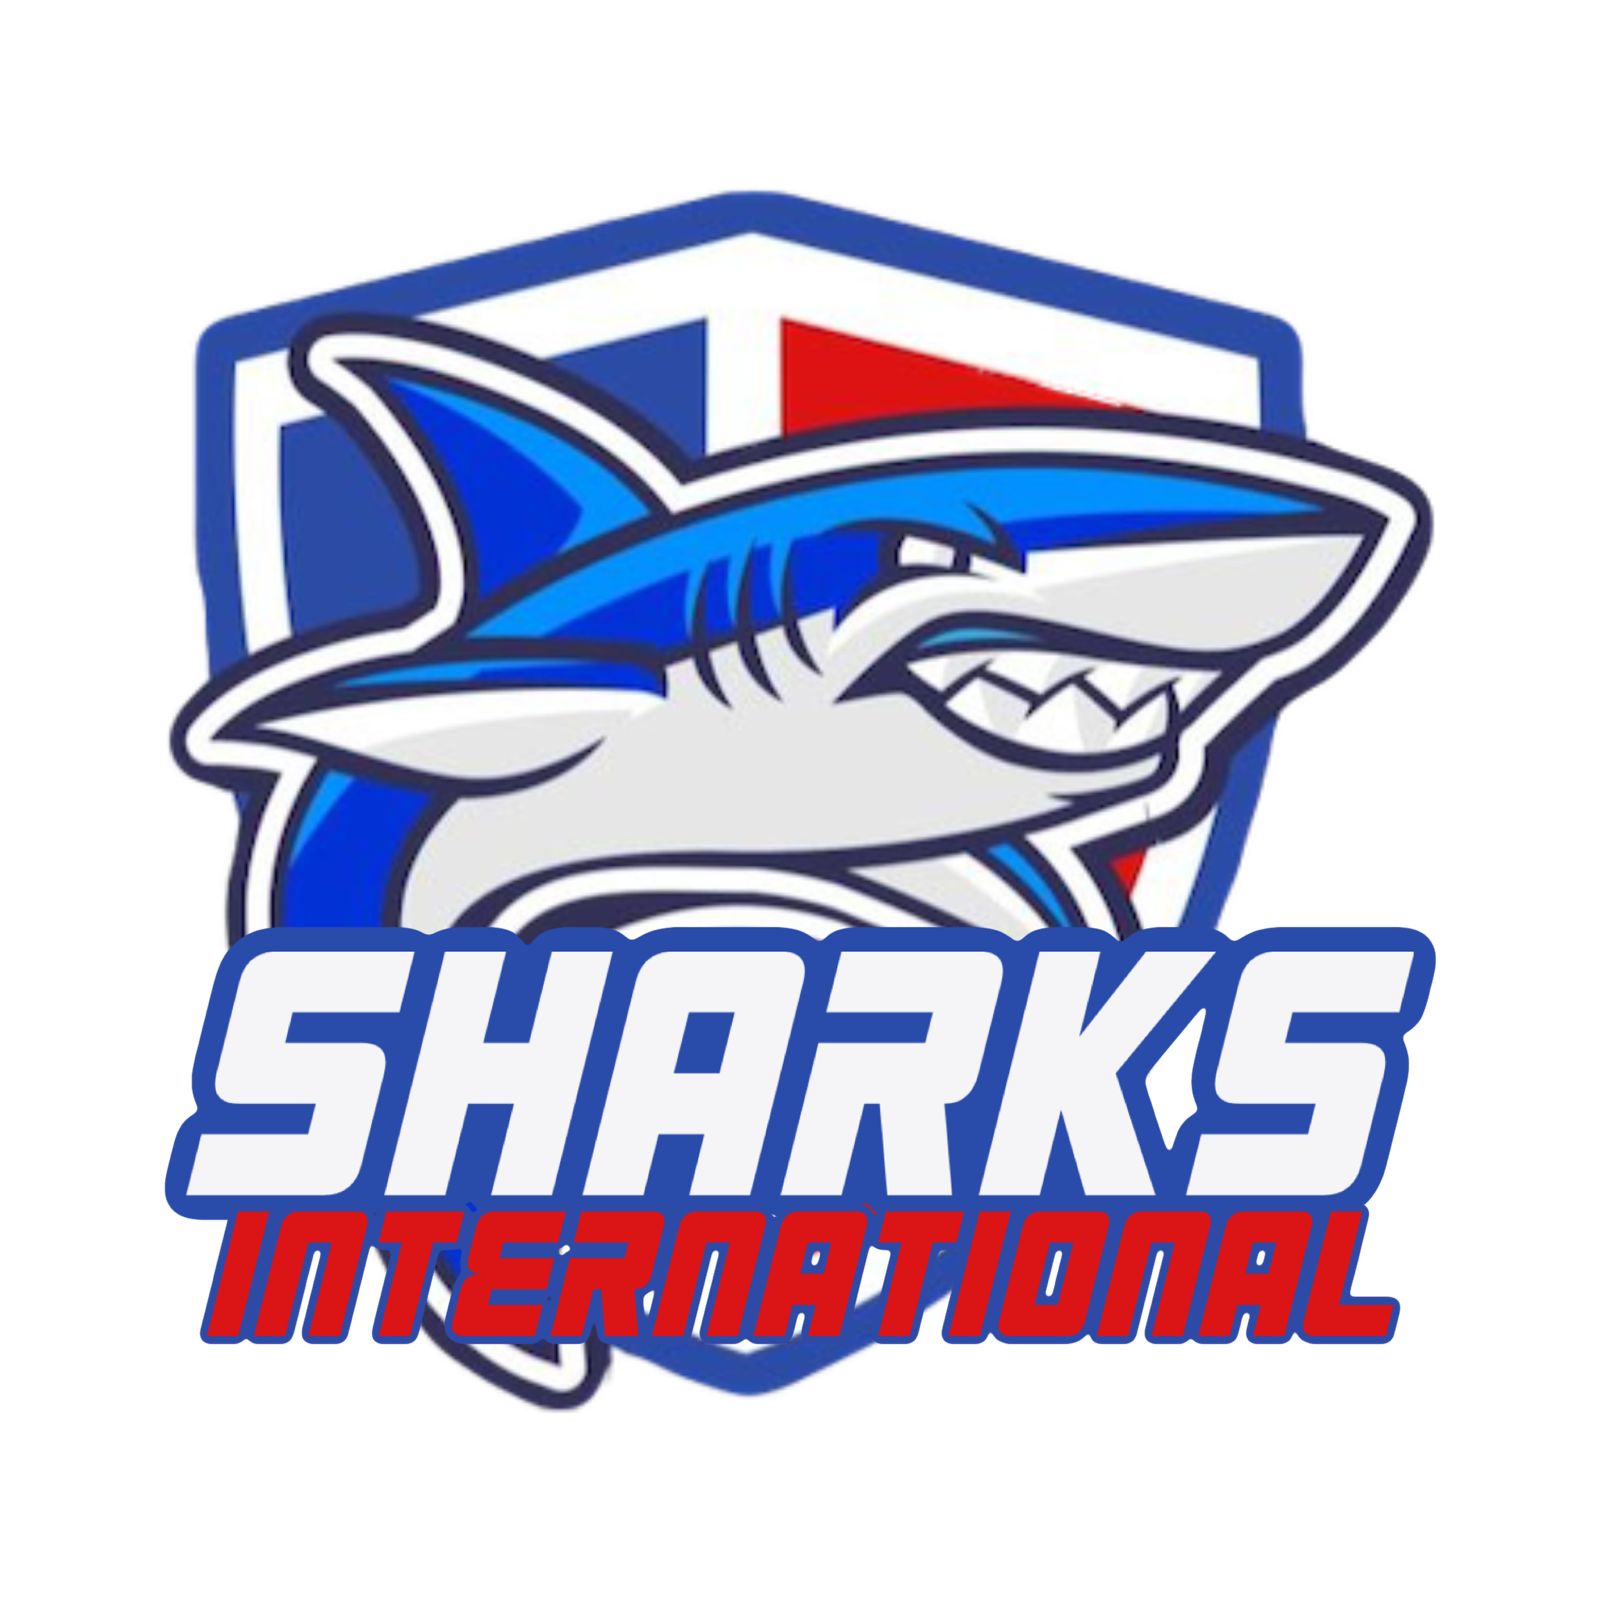 Sharks International